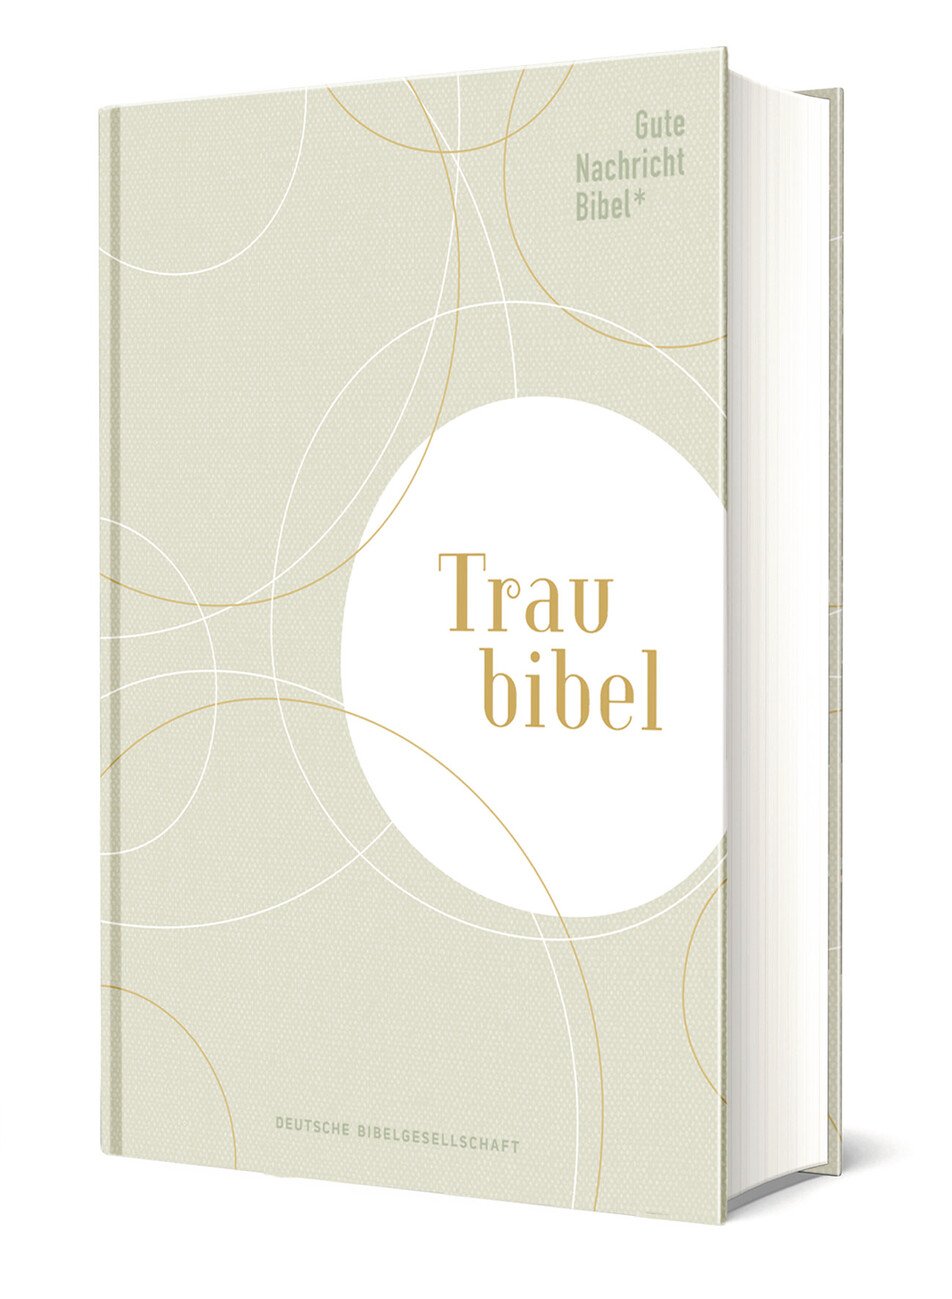 Gute Nachricht Bibel - Die Traubibel - Cover